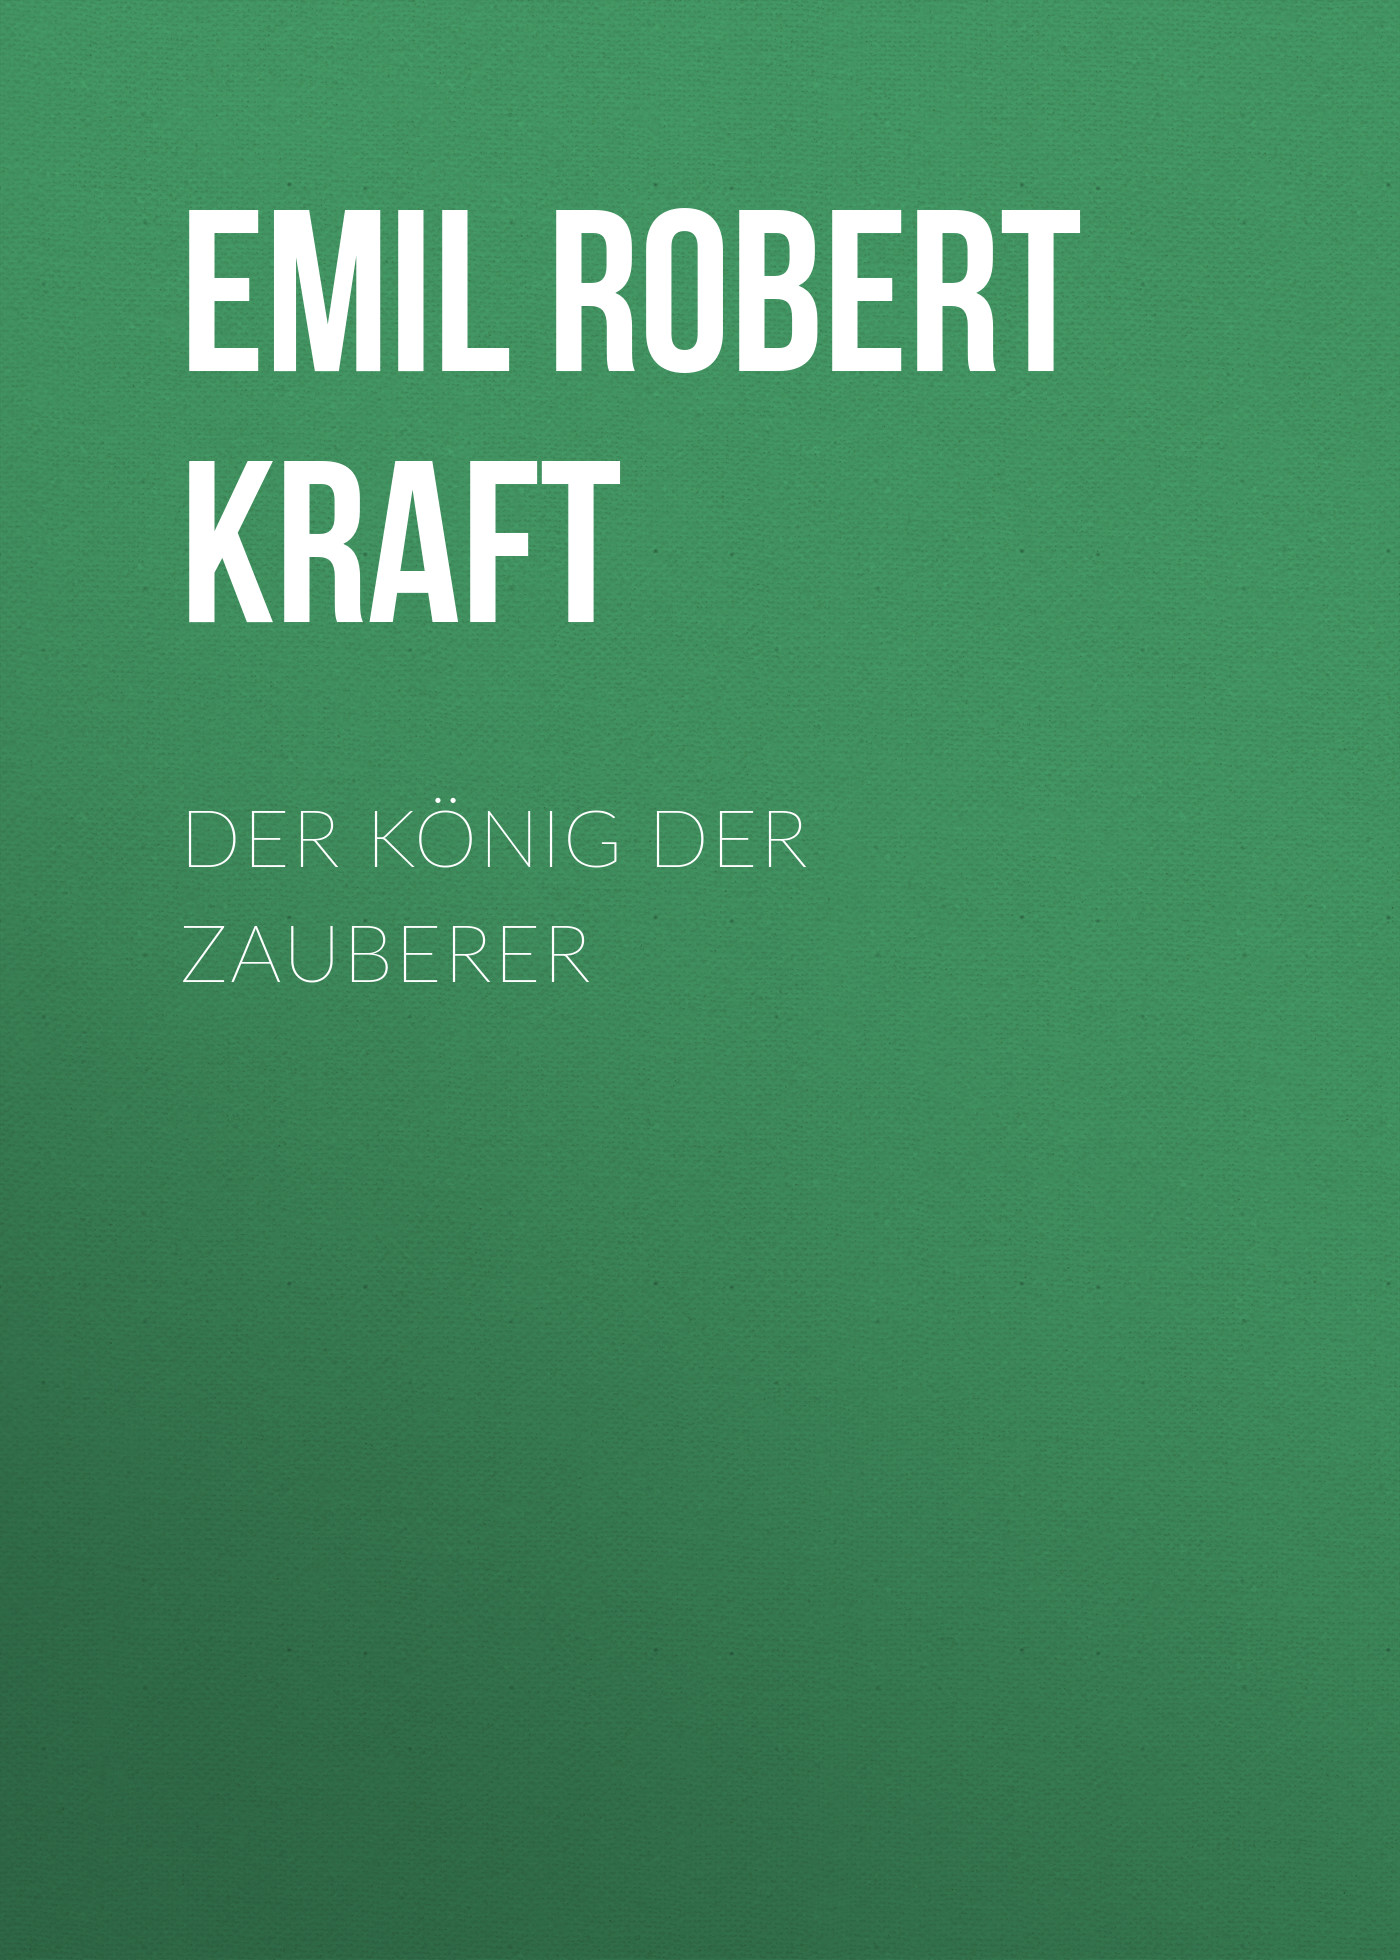 Книга Der König der Zauberer из серии , созданная Emil Robert Kraft, может относится к жанру Зарубежная классика. Стоимость электронной книги Der König der Zauberer с идентификатором 48633140 составляет 0 руб.